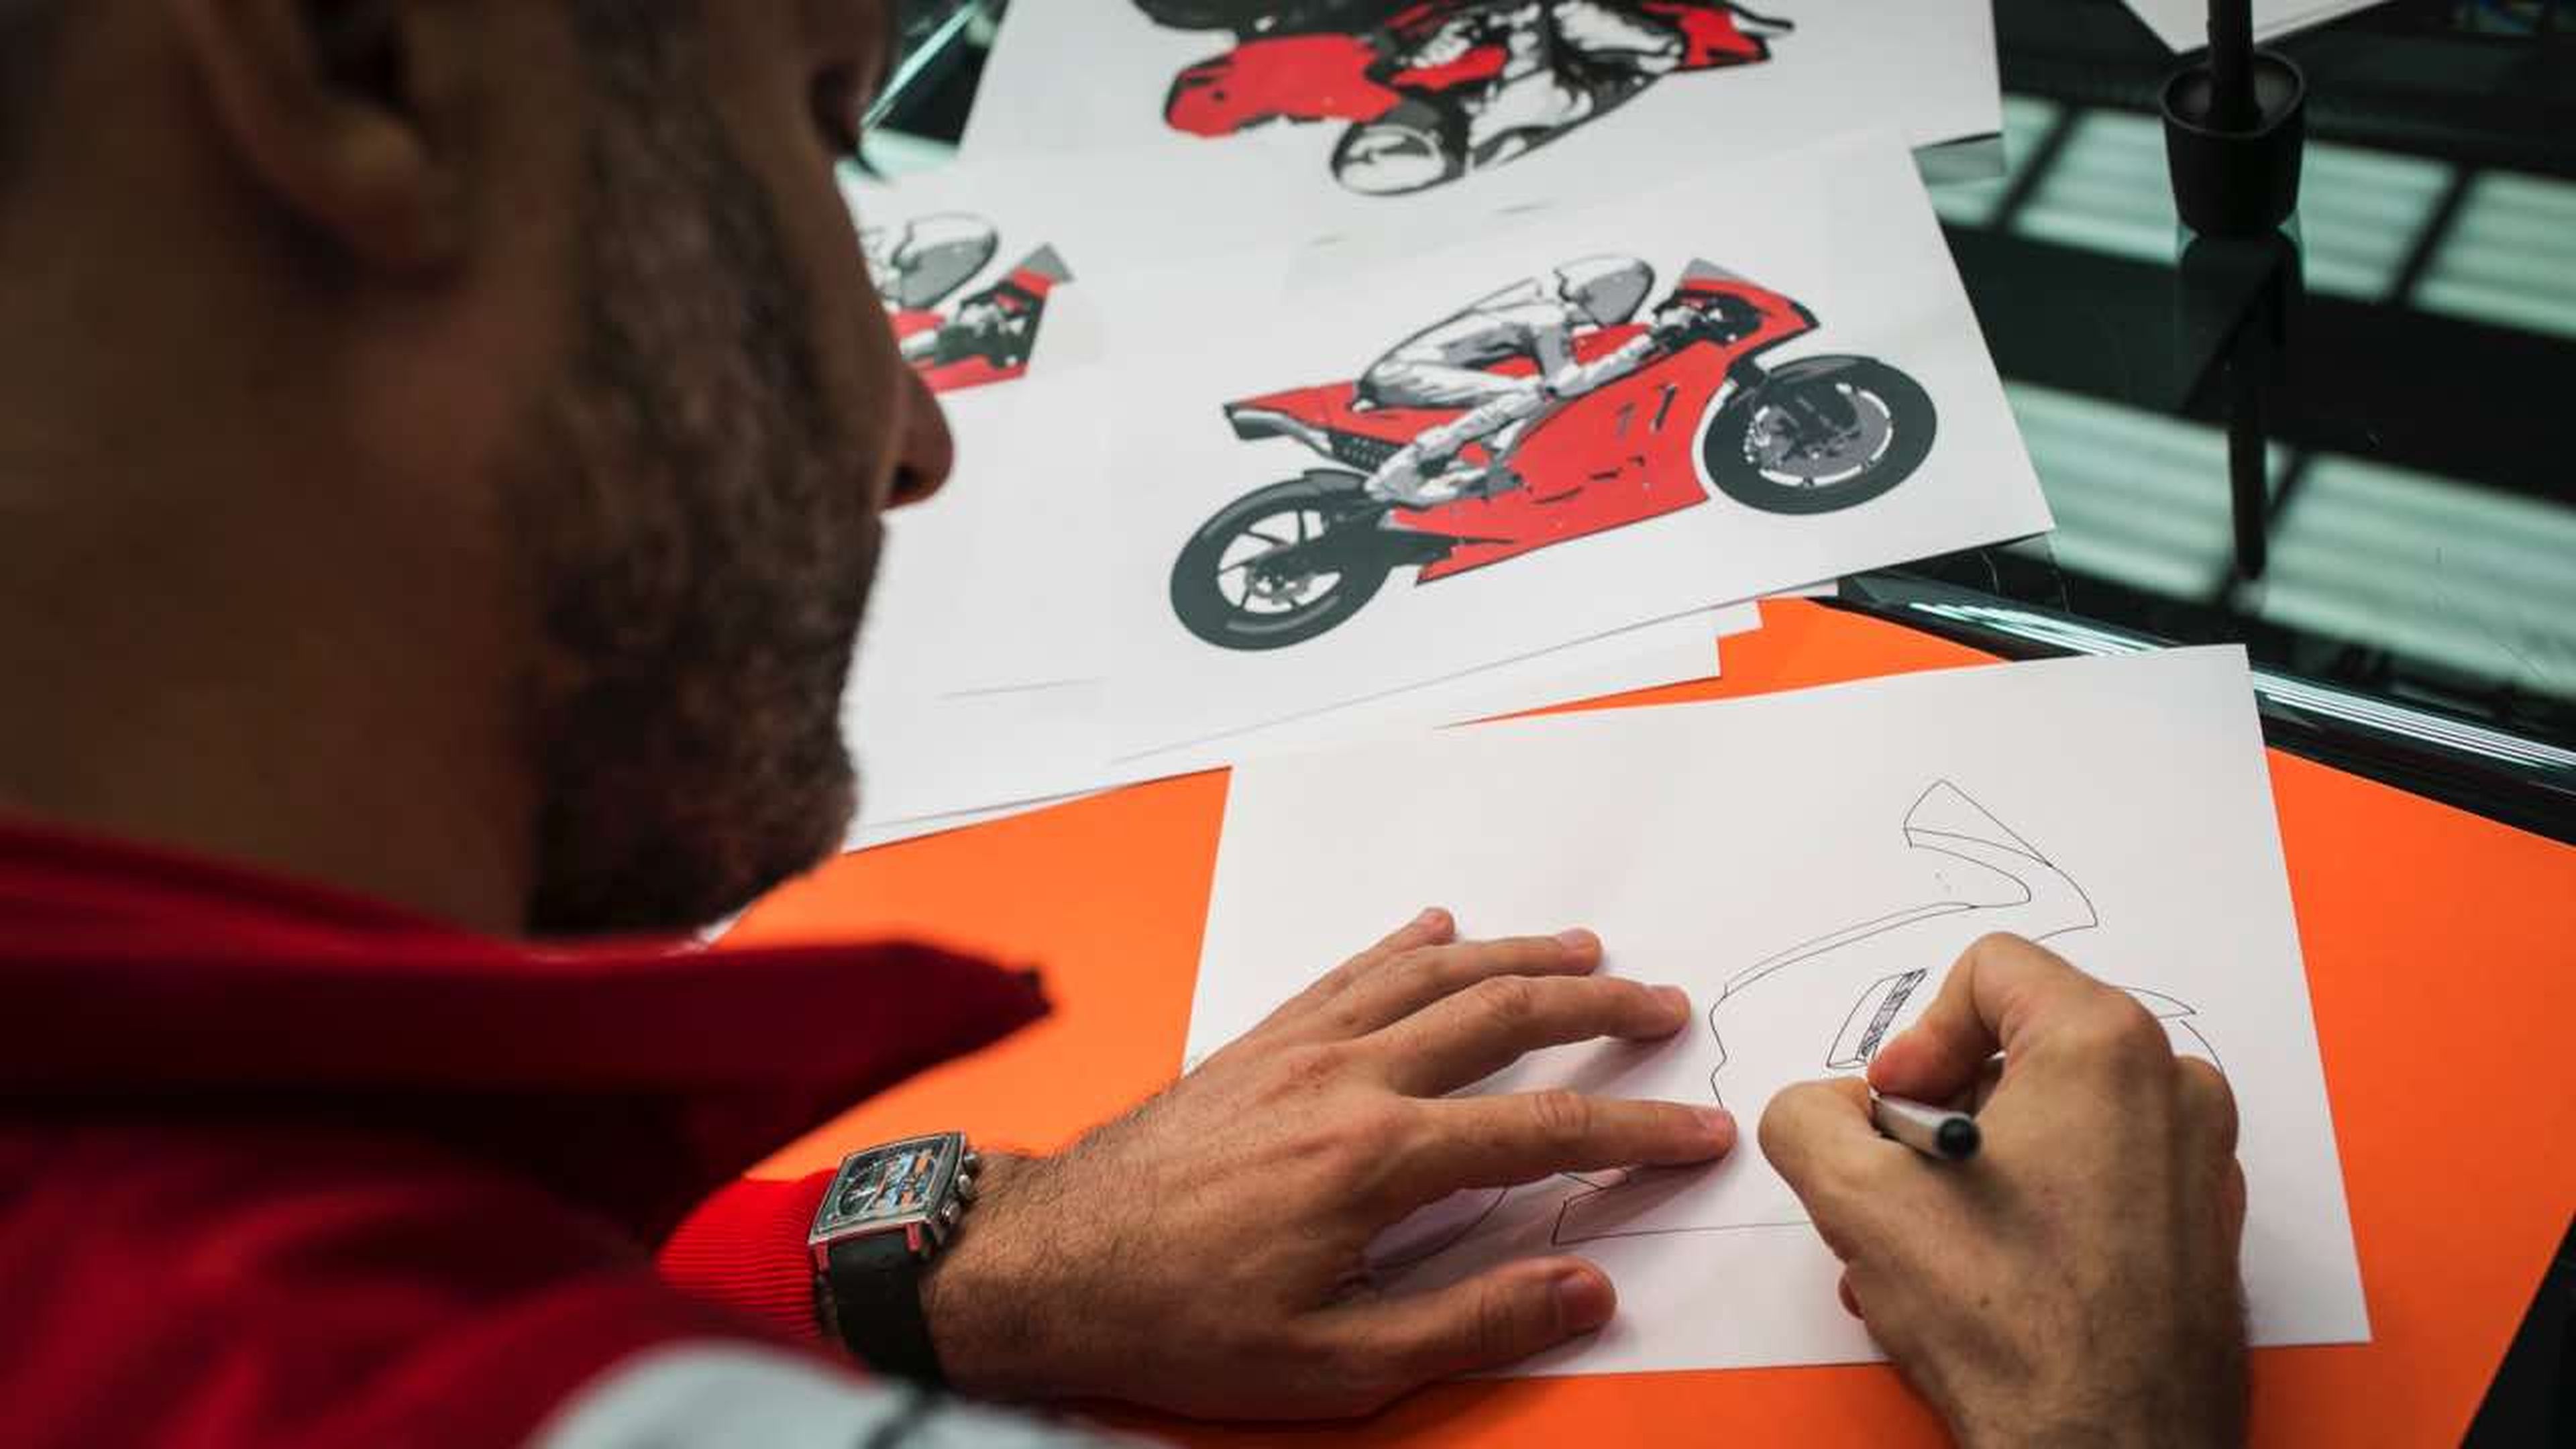 Conocemos los secretos de diseño de la Ducati de MotoGP